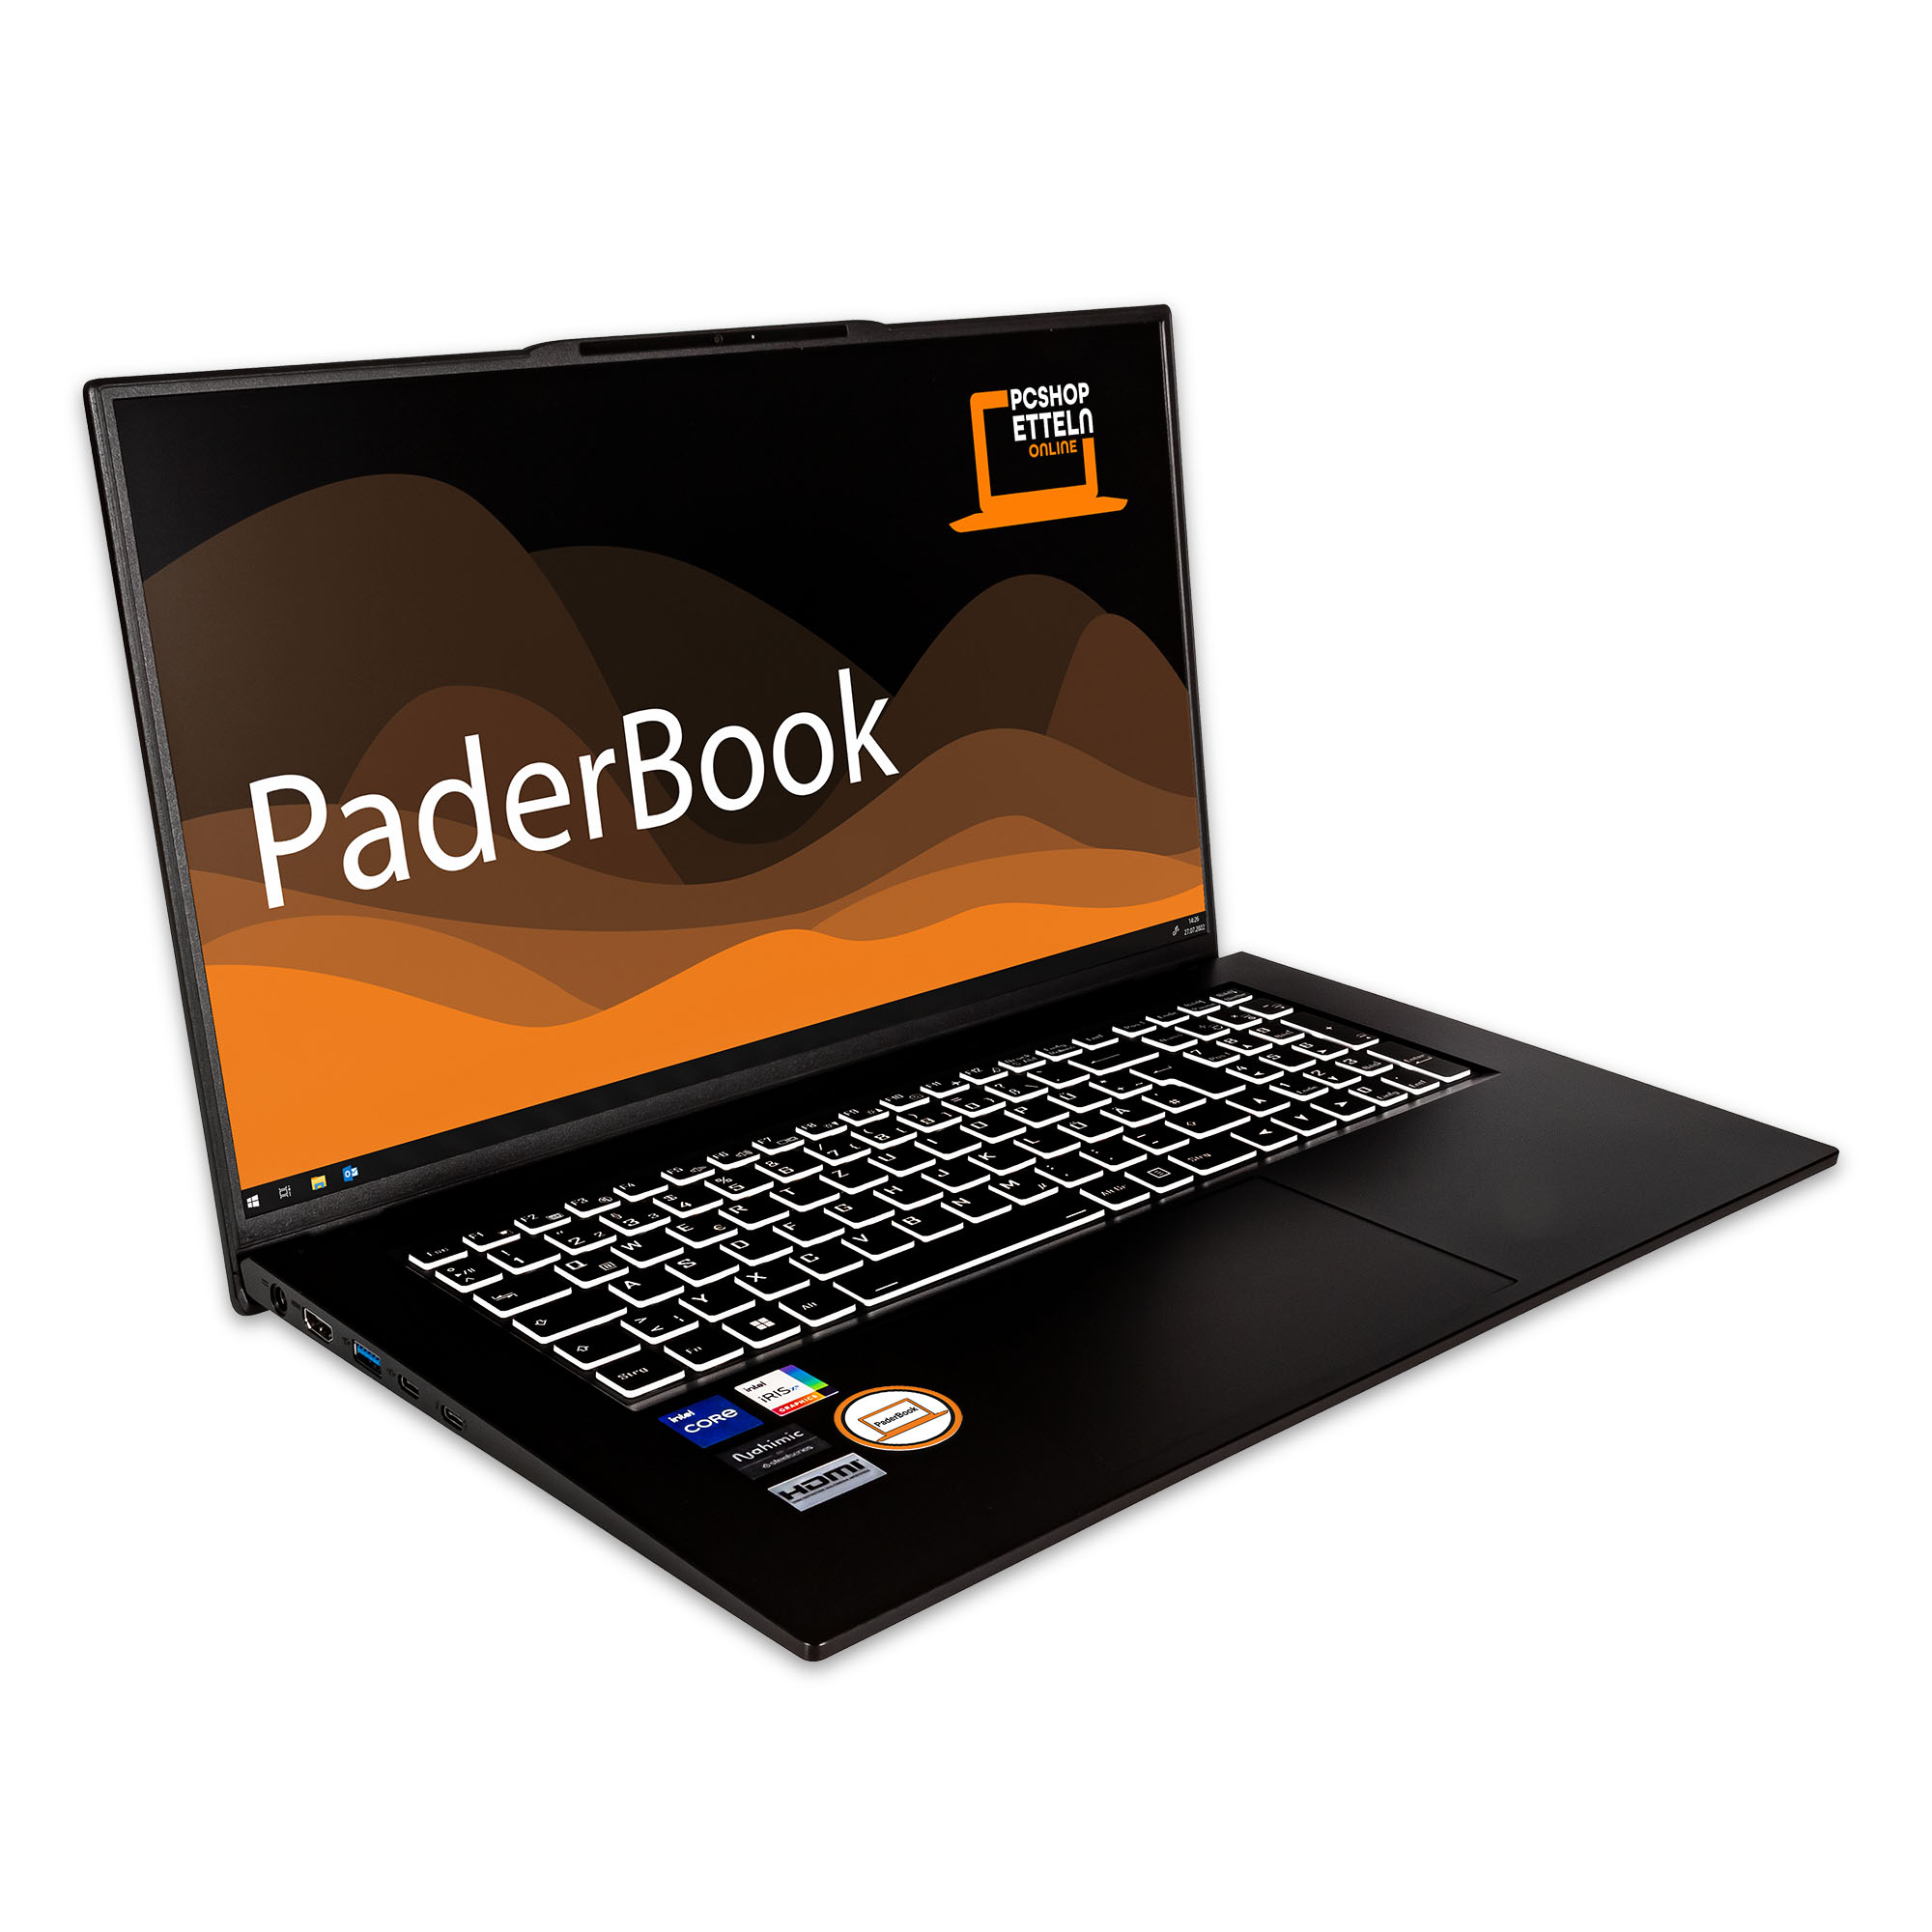 aktiviert, 16 fertig Office SSD, GB installiert mit Notebook Pro, Plus Display, 2021 und i57, 17,3 Schwarz GB 500 Zoll RAM, PADERBOOK